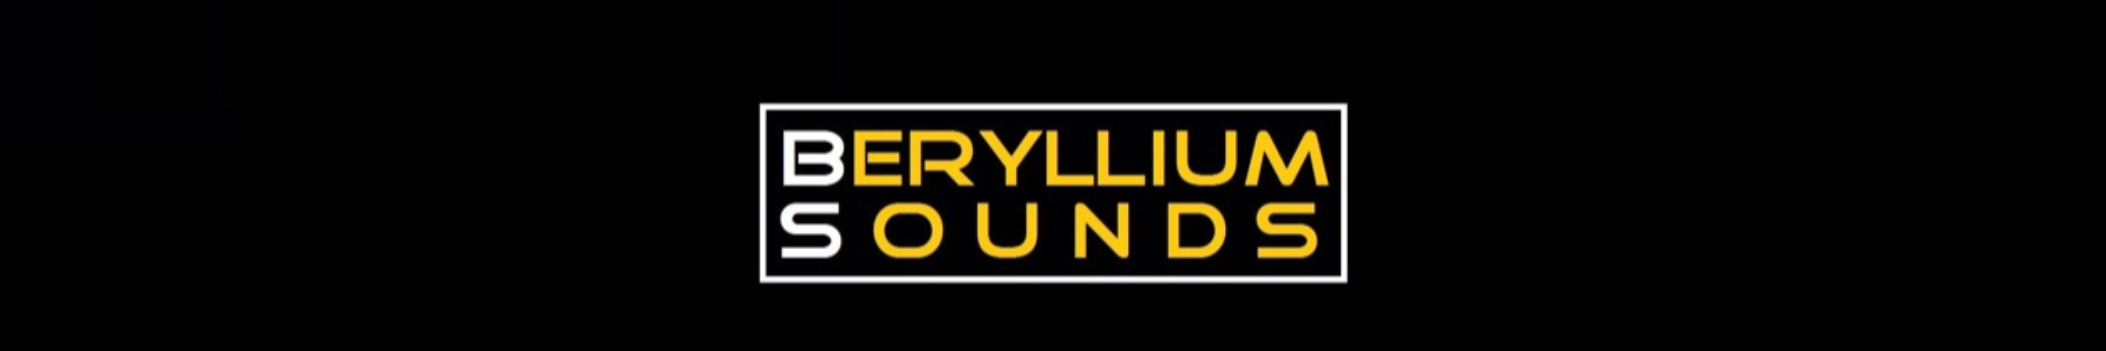 Beryllium Sounds